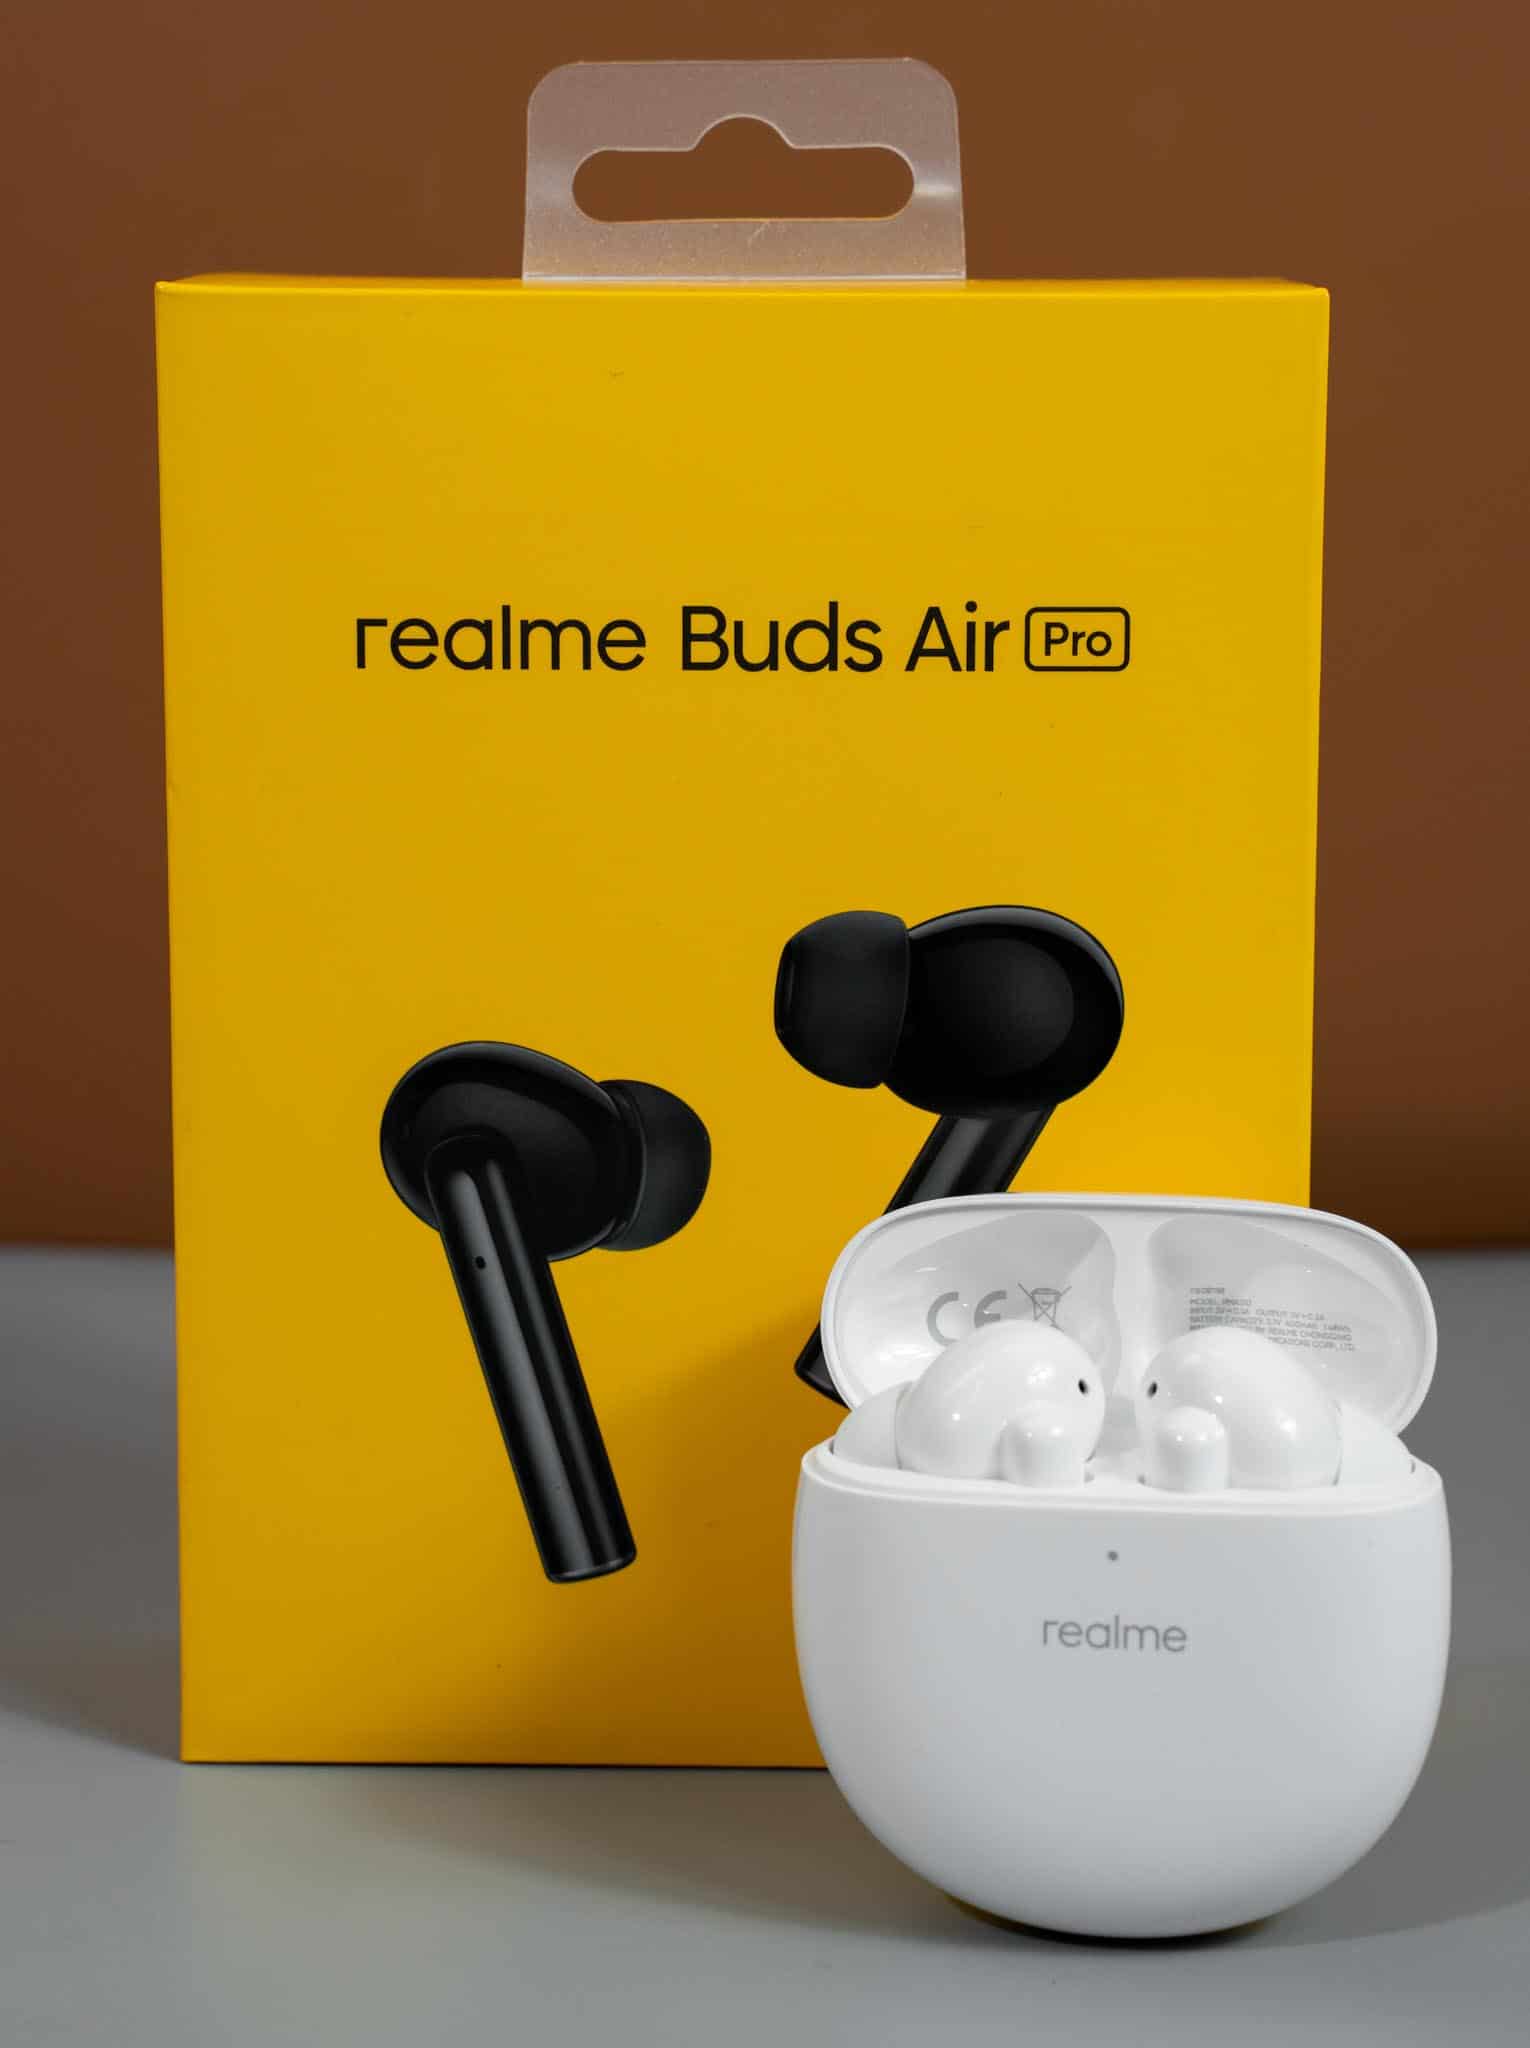 Realme mở bán tai nghe Realme Buds Air Pro giá 2,690,000 VND độc quyền tại CellphoneS, tặng loa 990,000 VND khi đặt hàng trước